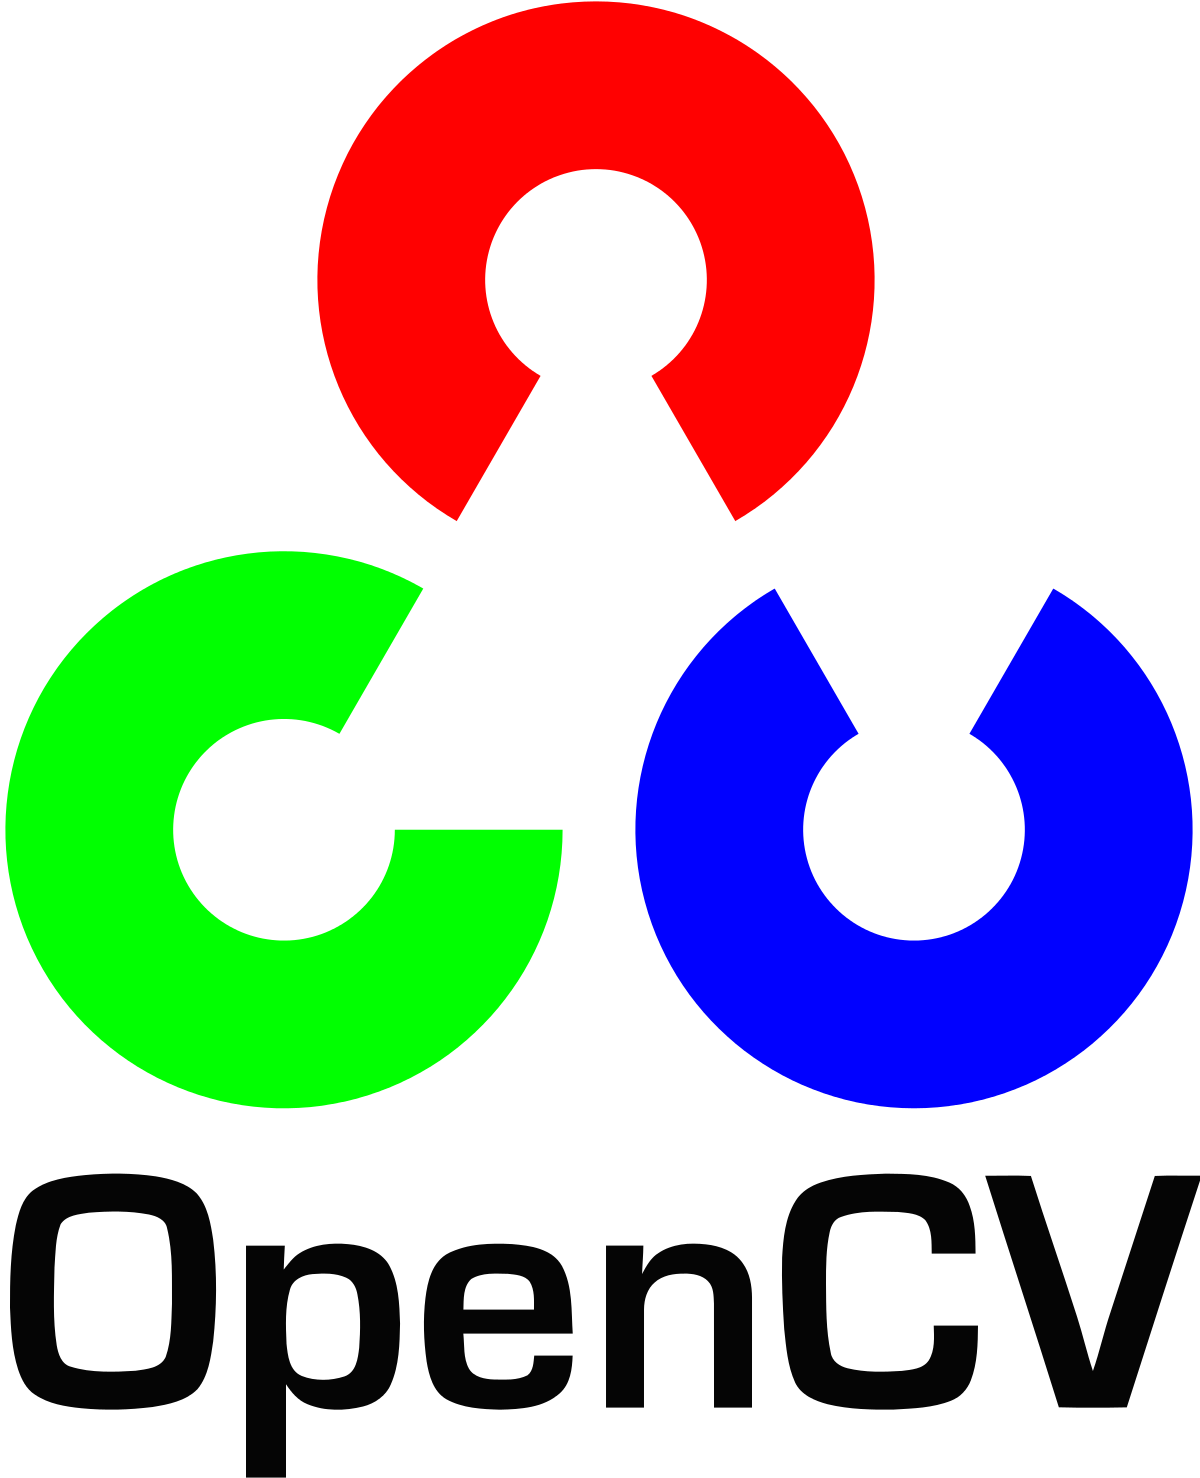 OpenCV là gì? Học Computer Vision không khó!